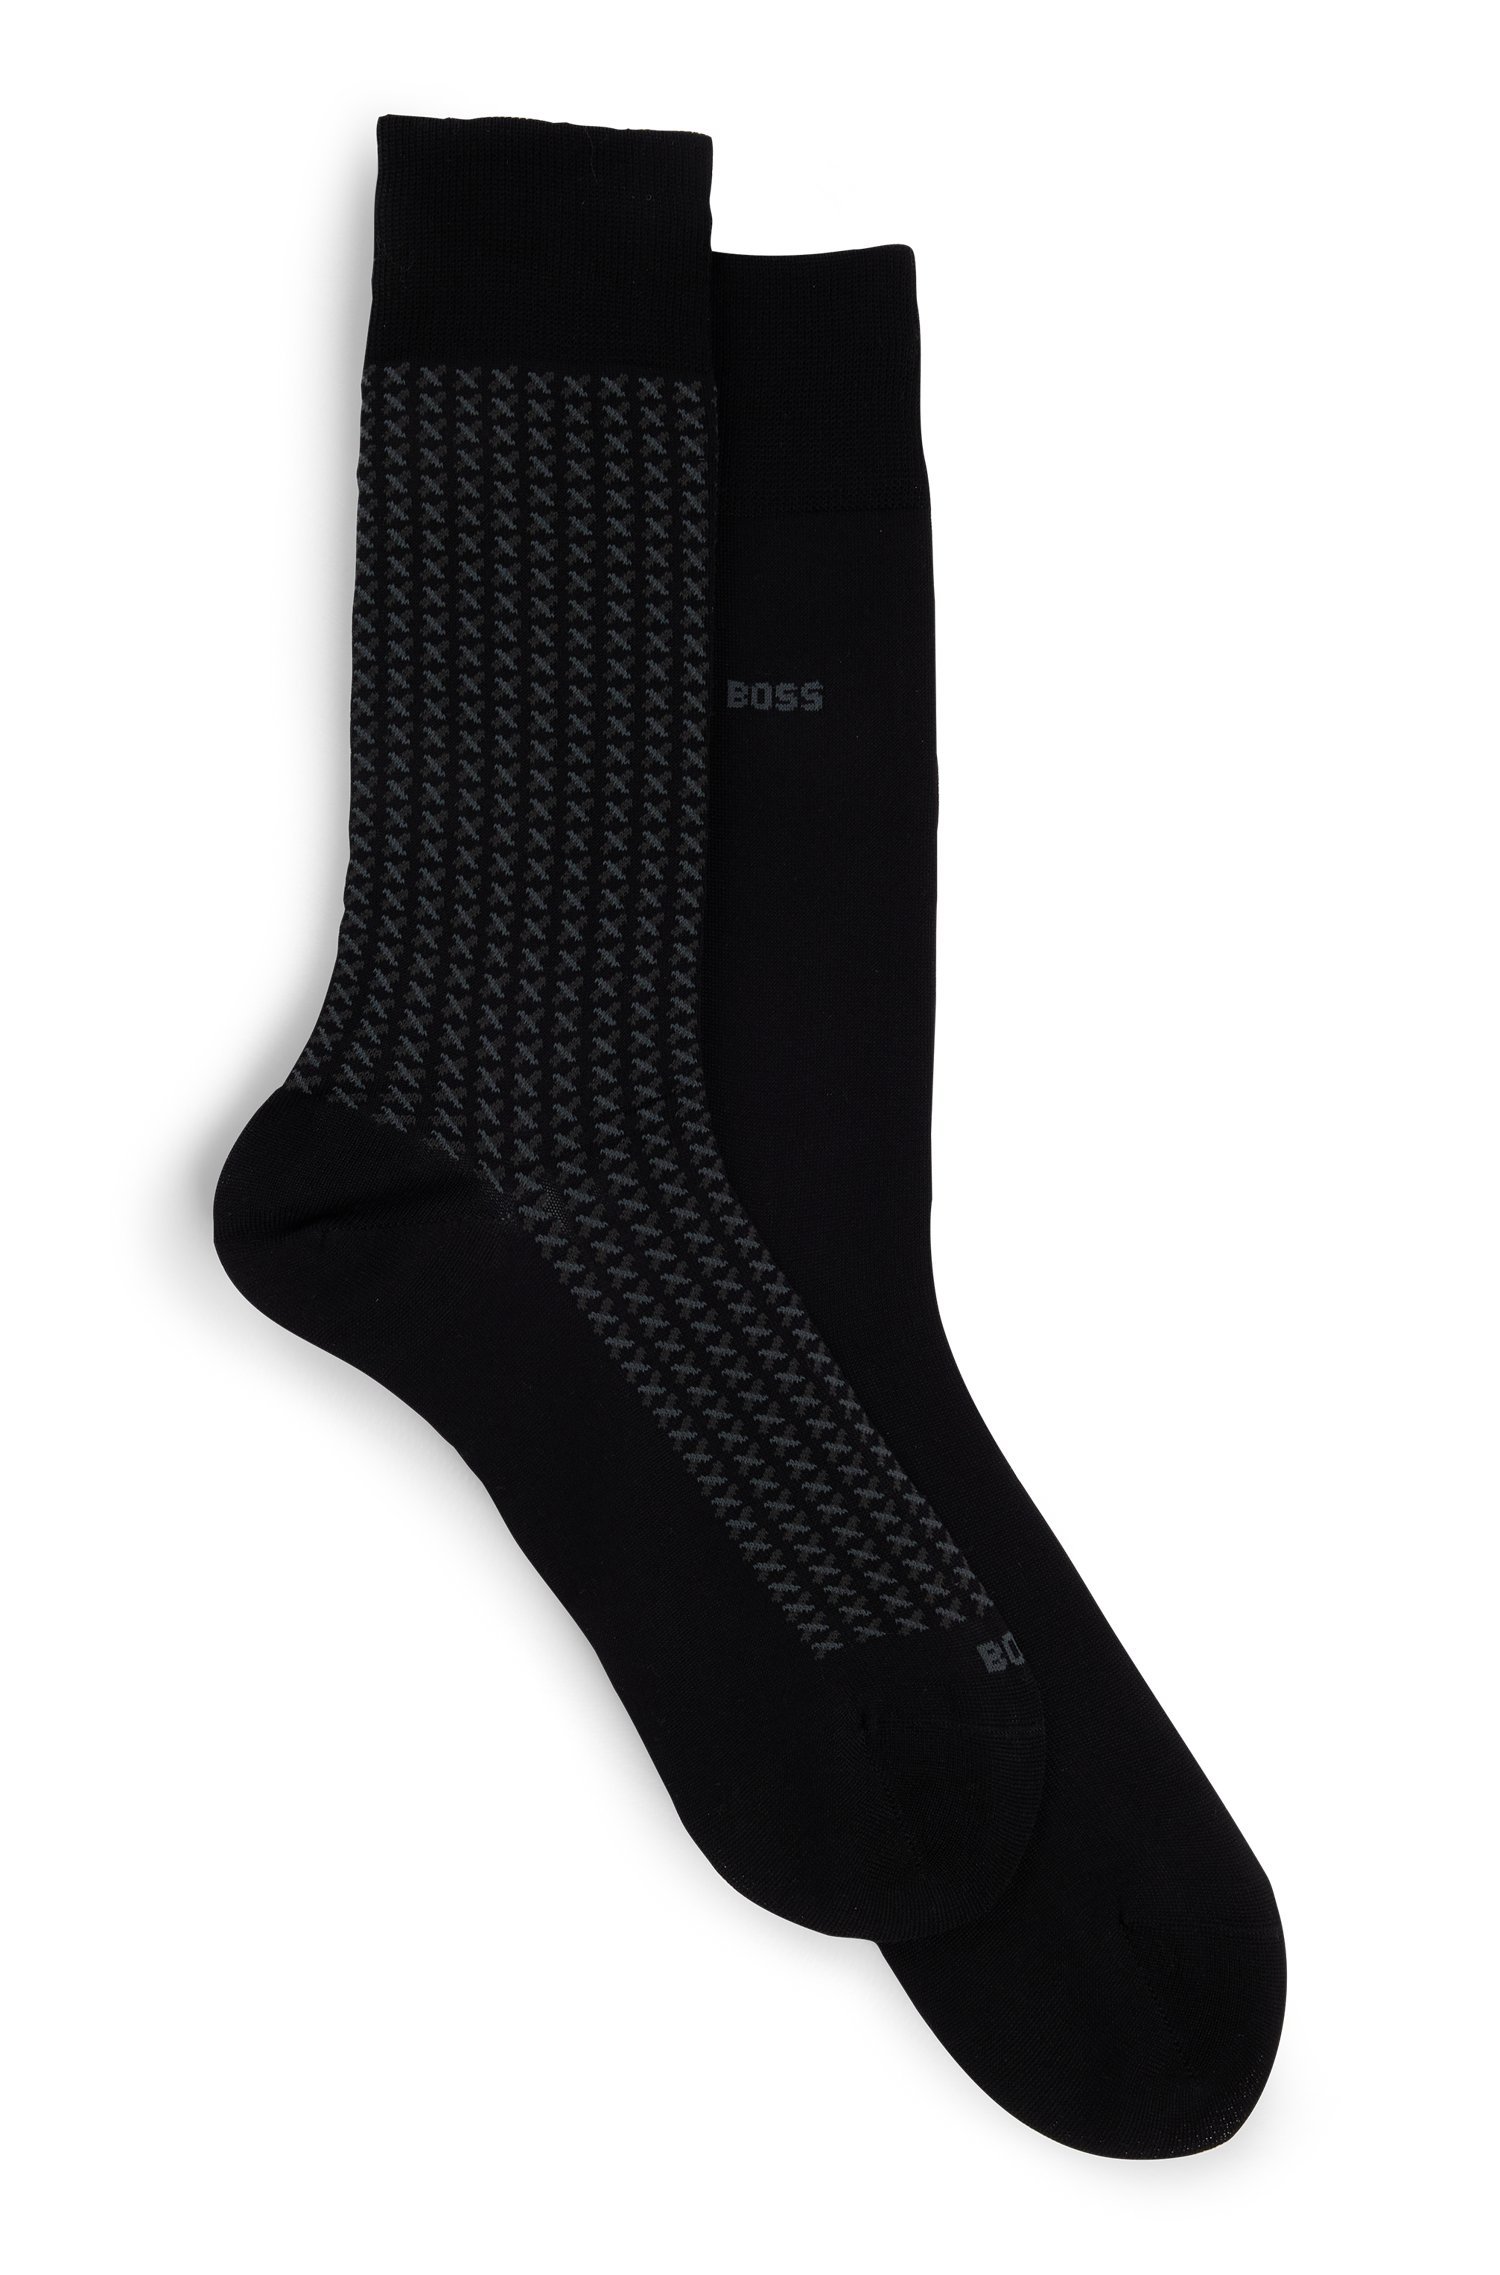 Two-pack of regular-length socks with mercerized finish